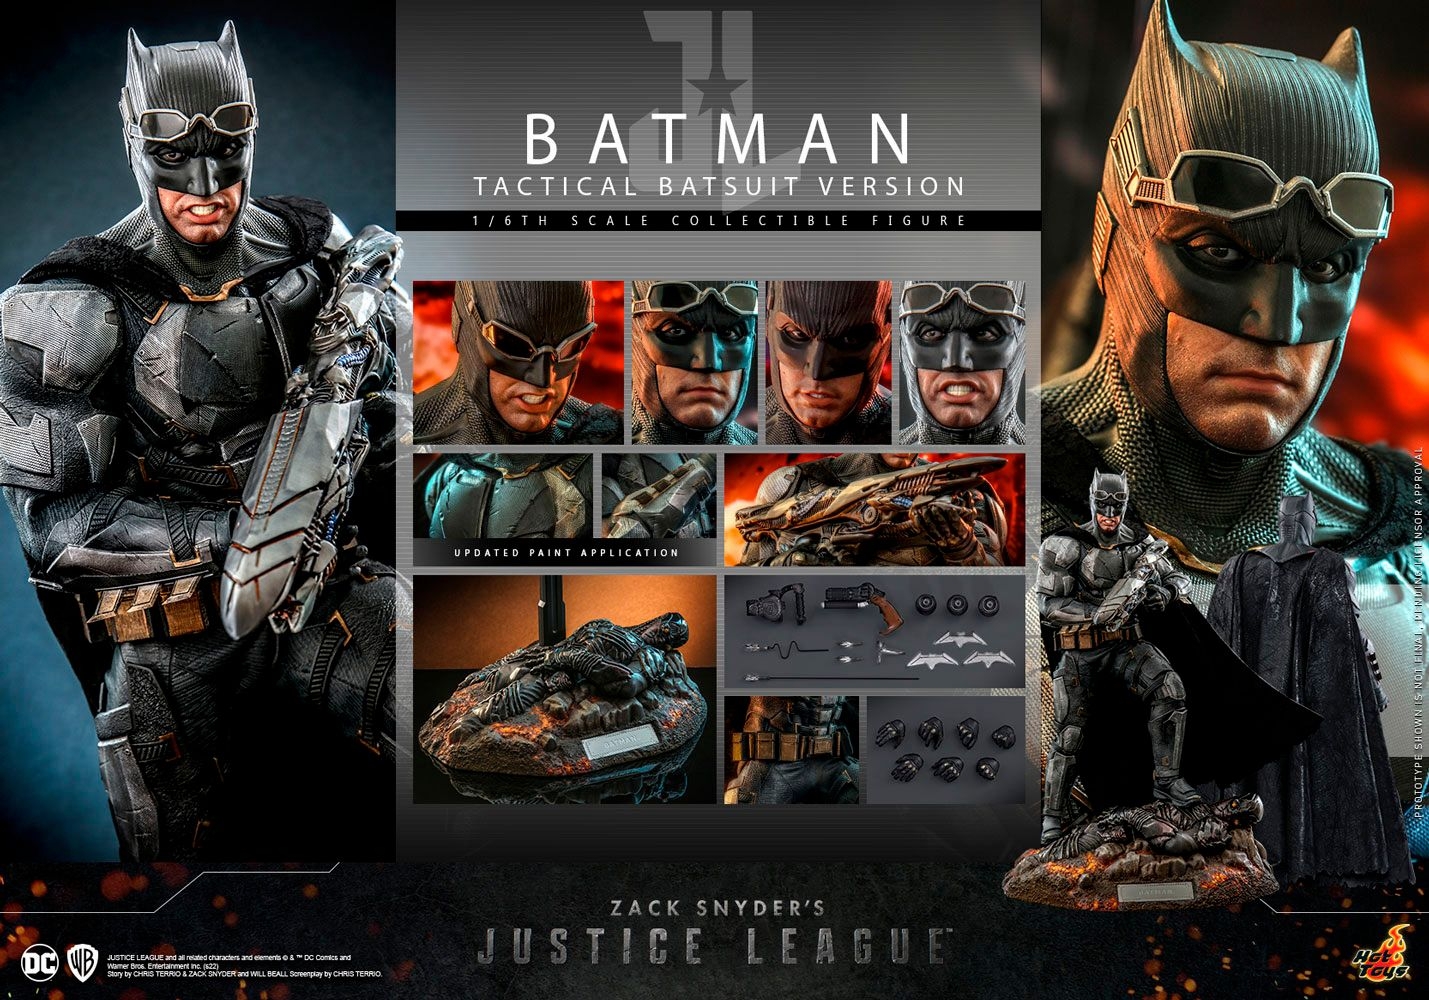 batman-tactical-batsuit-version_dc-comics_gallery_6323a7ac8ec21.jpg